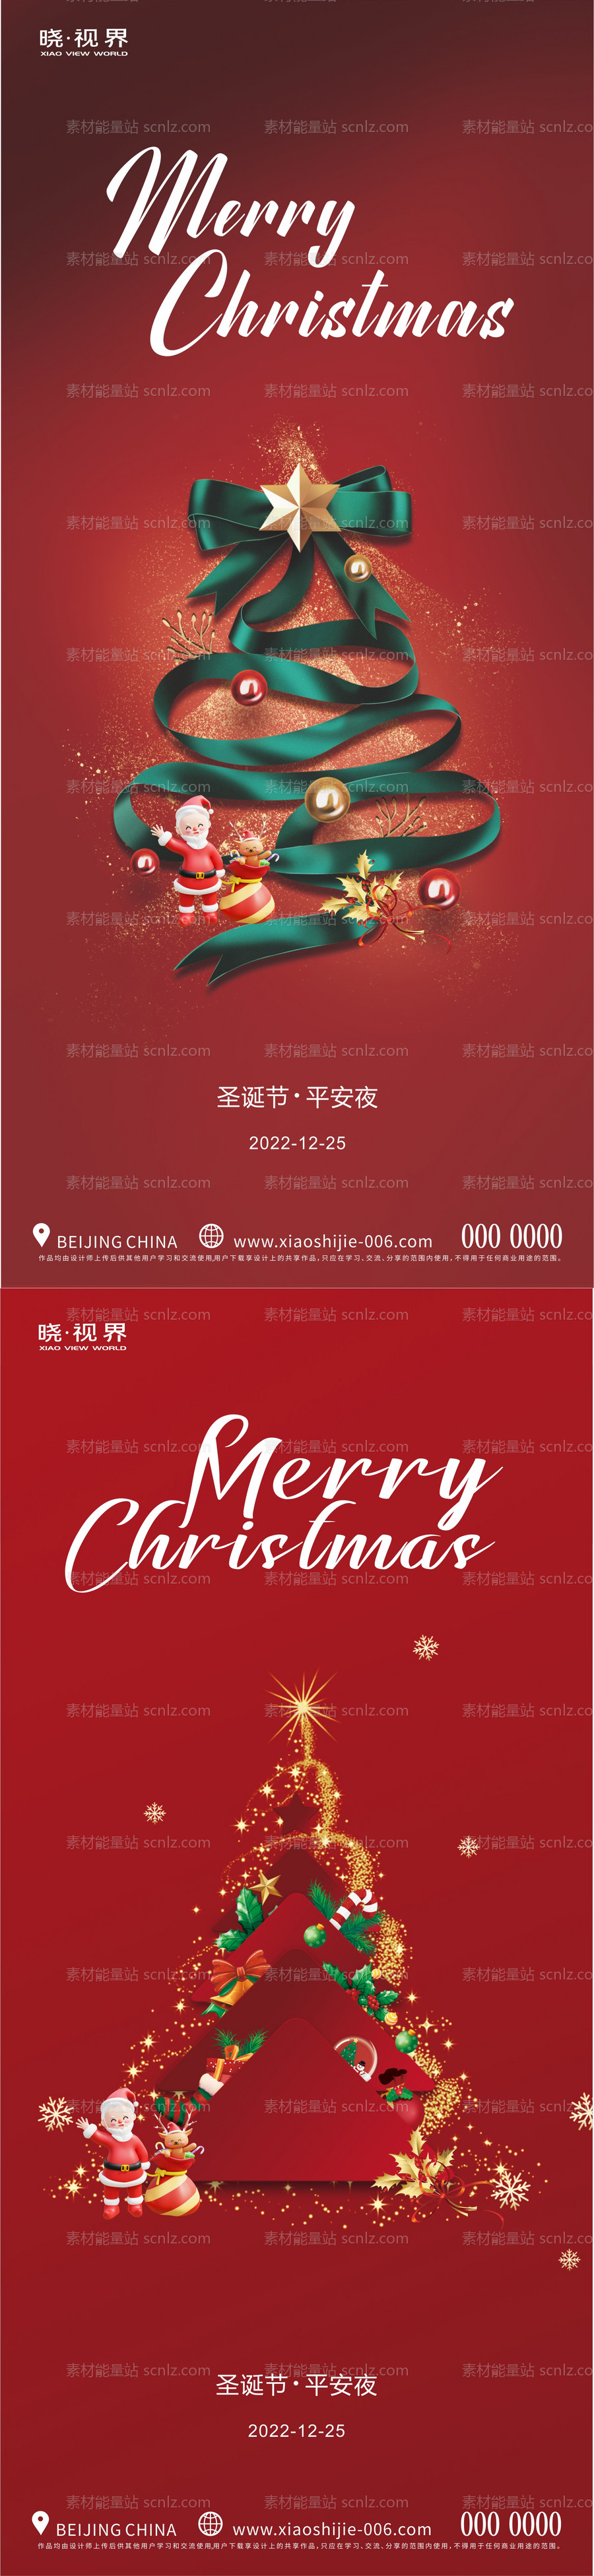 素材能量站-圣诞节平安夜节日系列海报